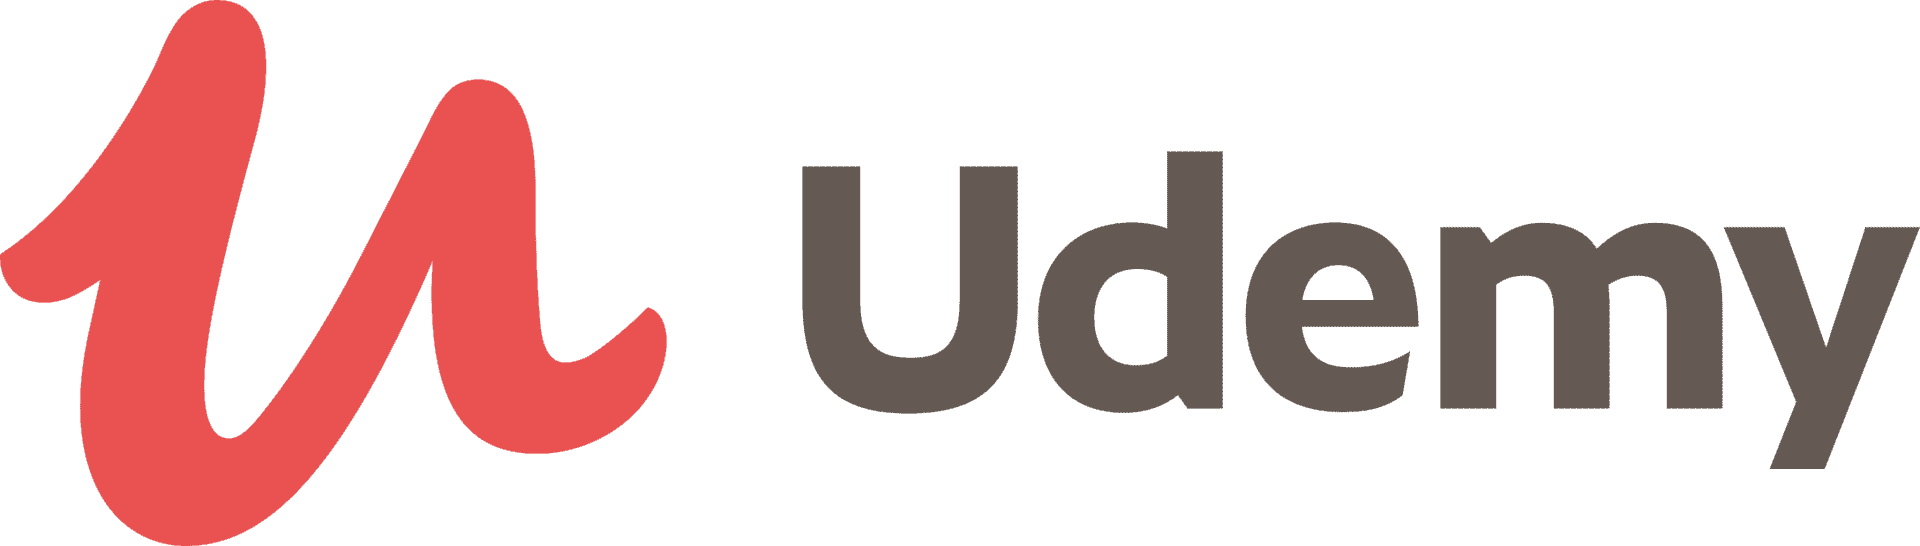 udemy-logo-png.1311240